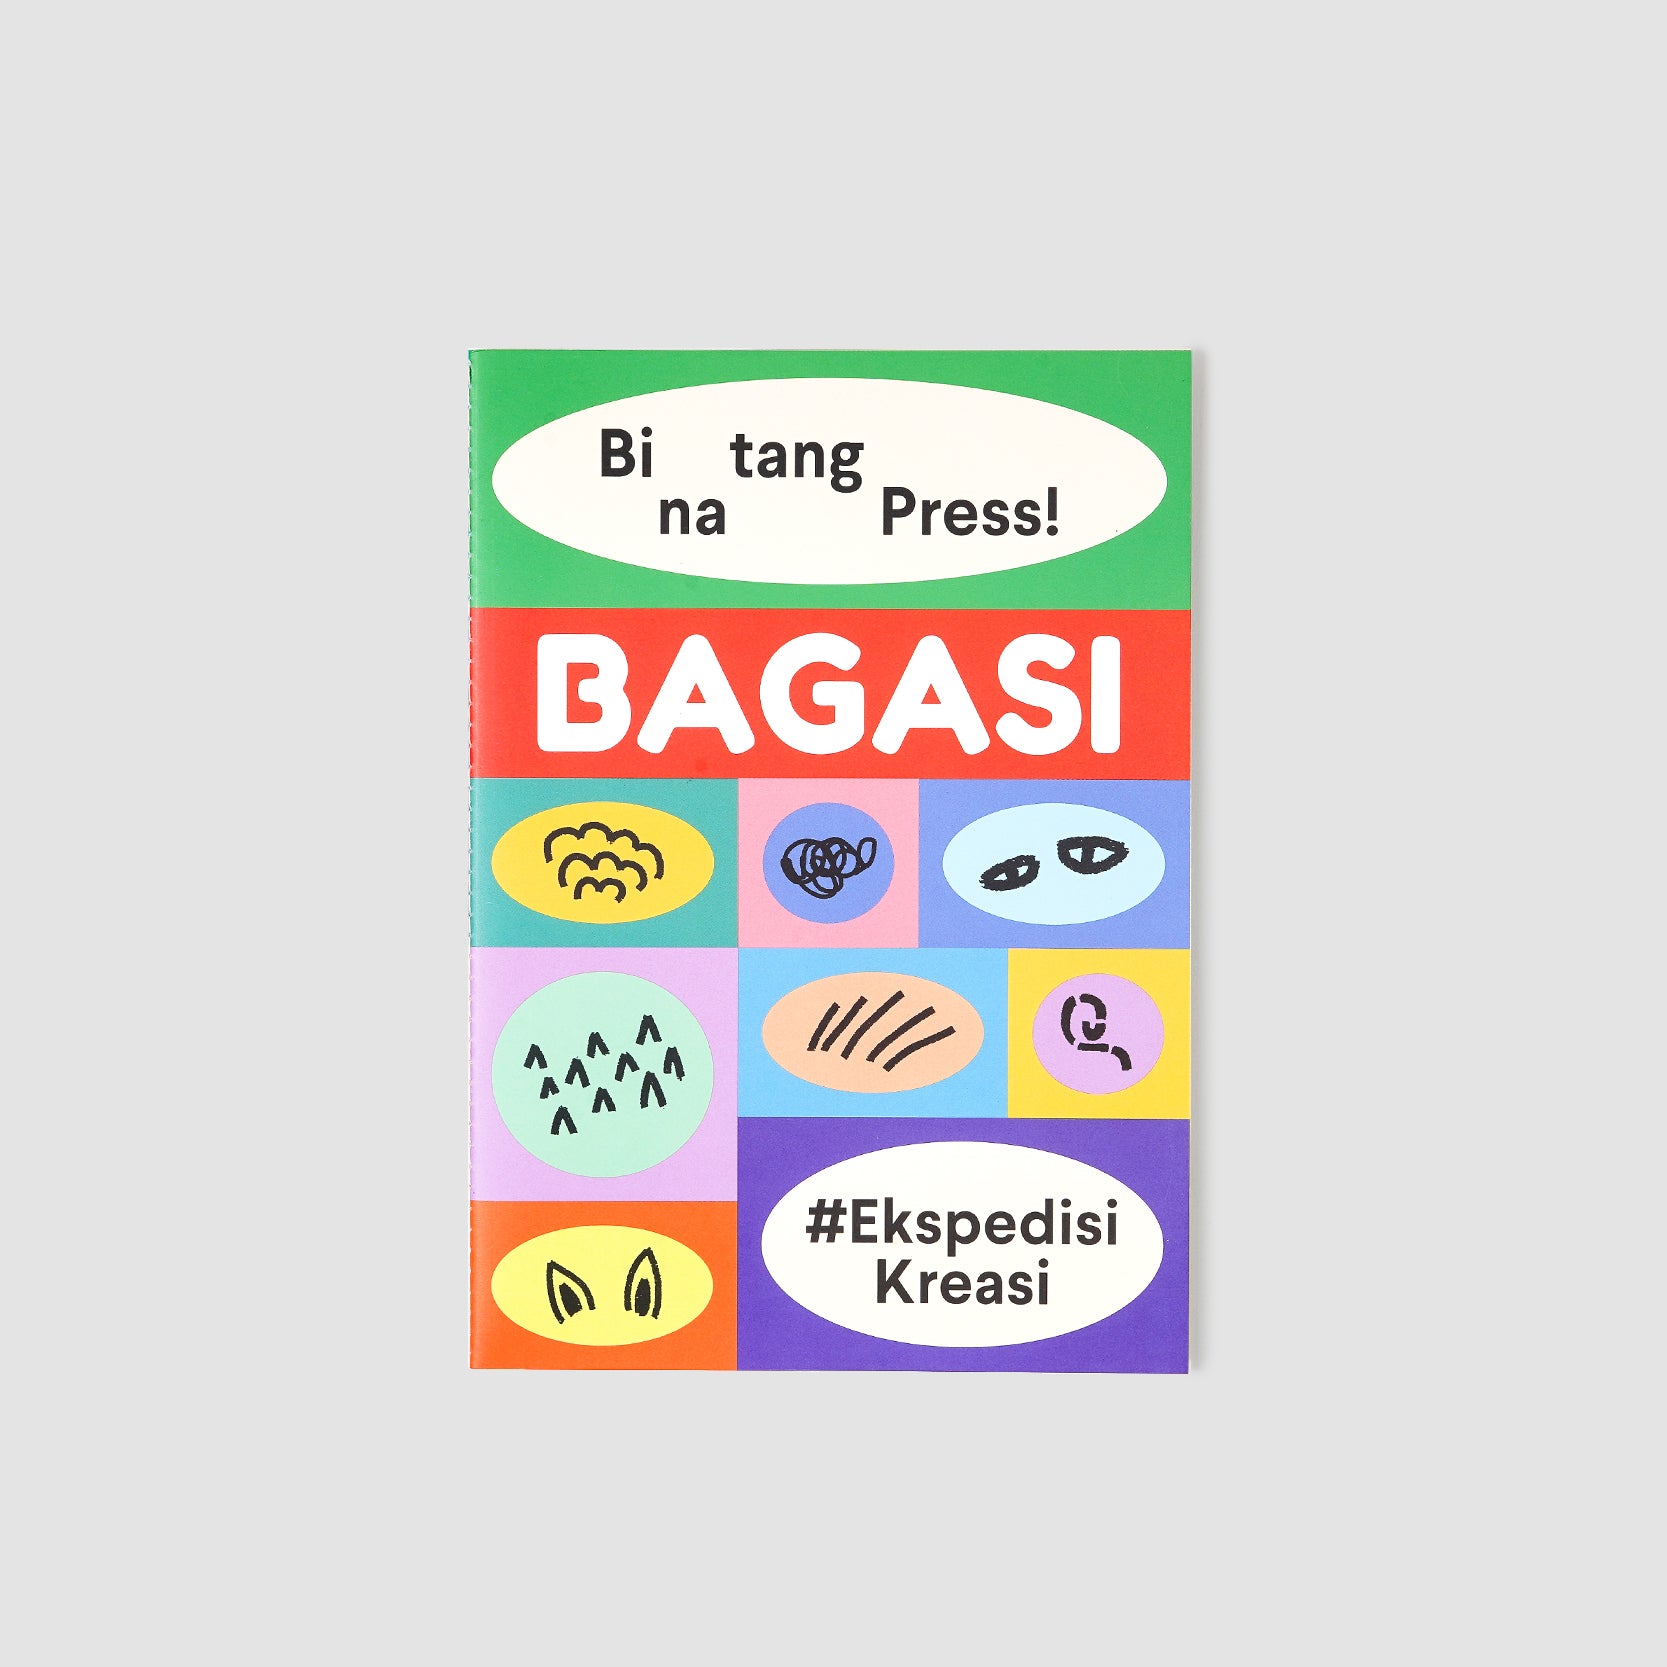 Binatang Ajaib Sticker Book By Binatang Press x Bagasi